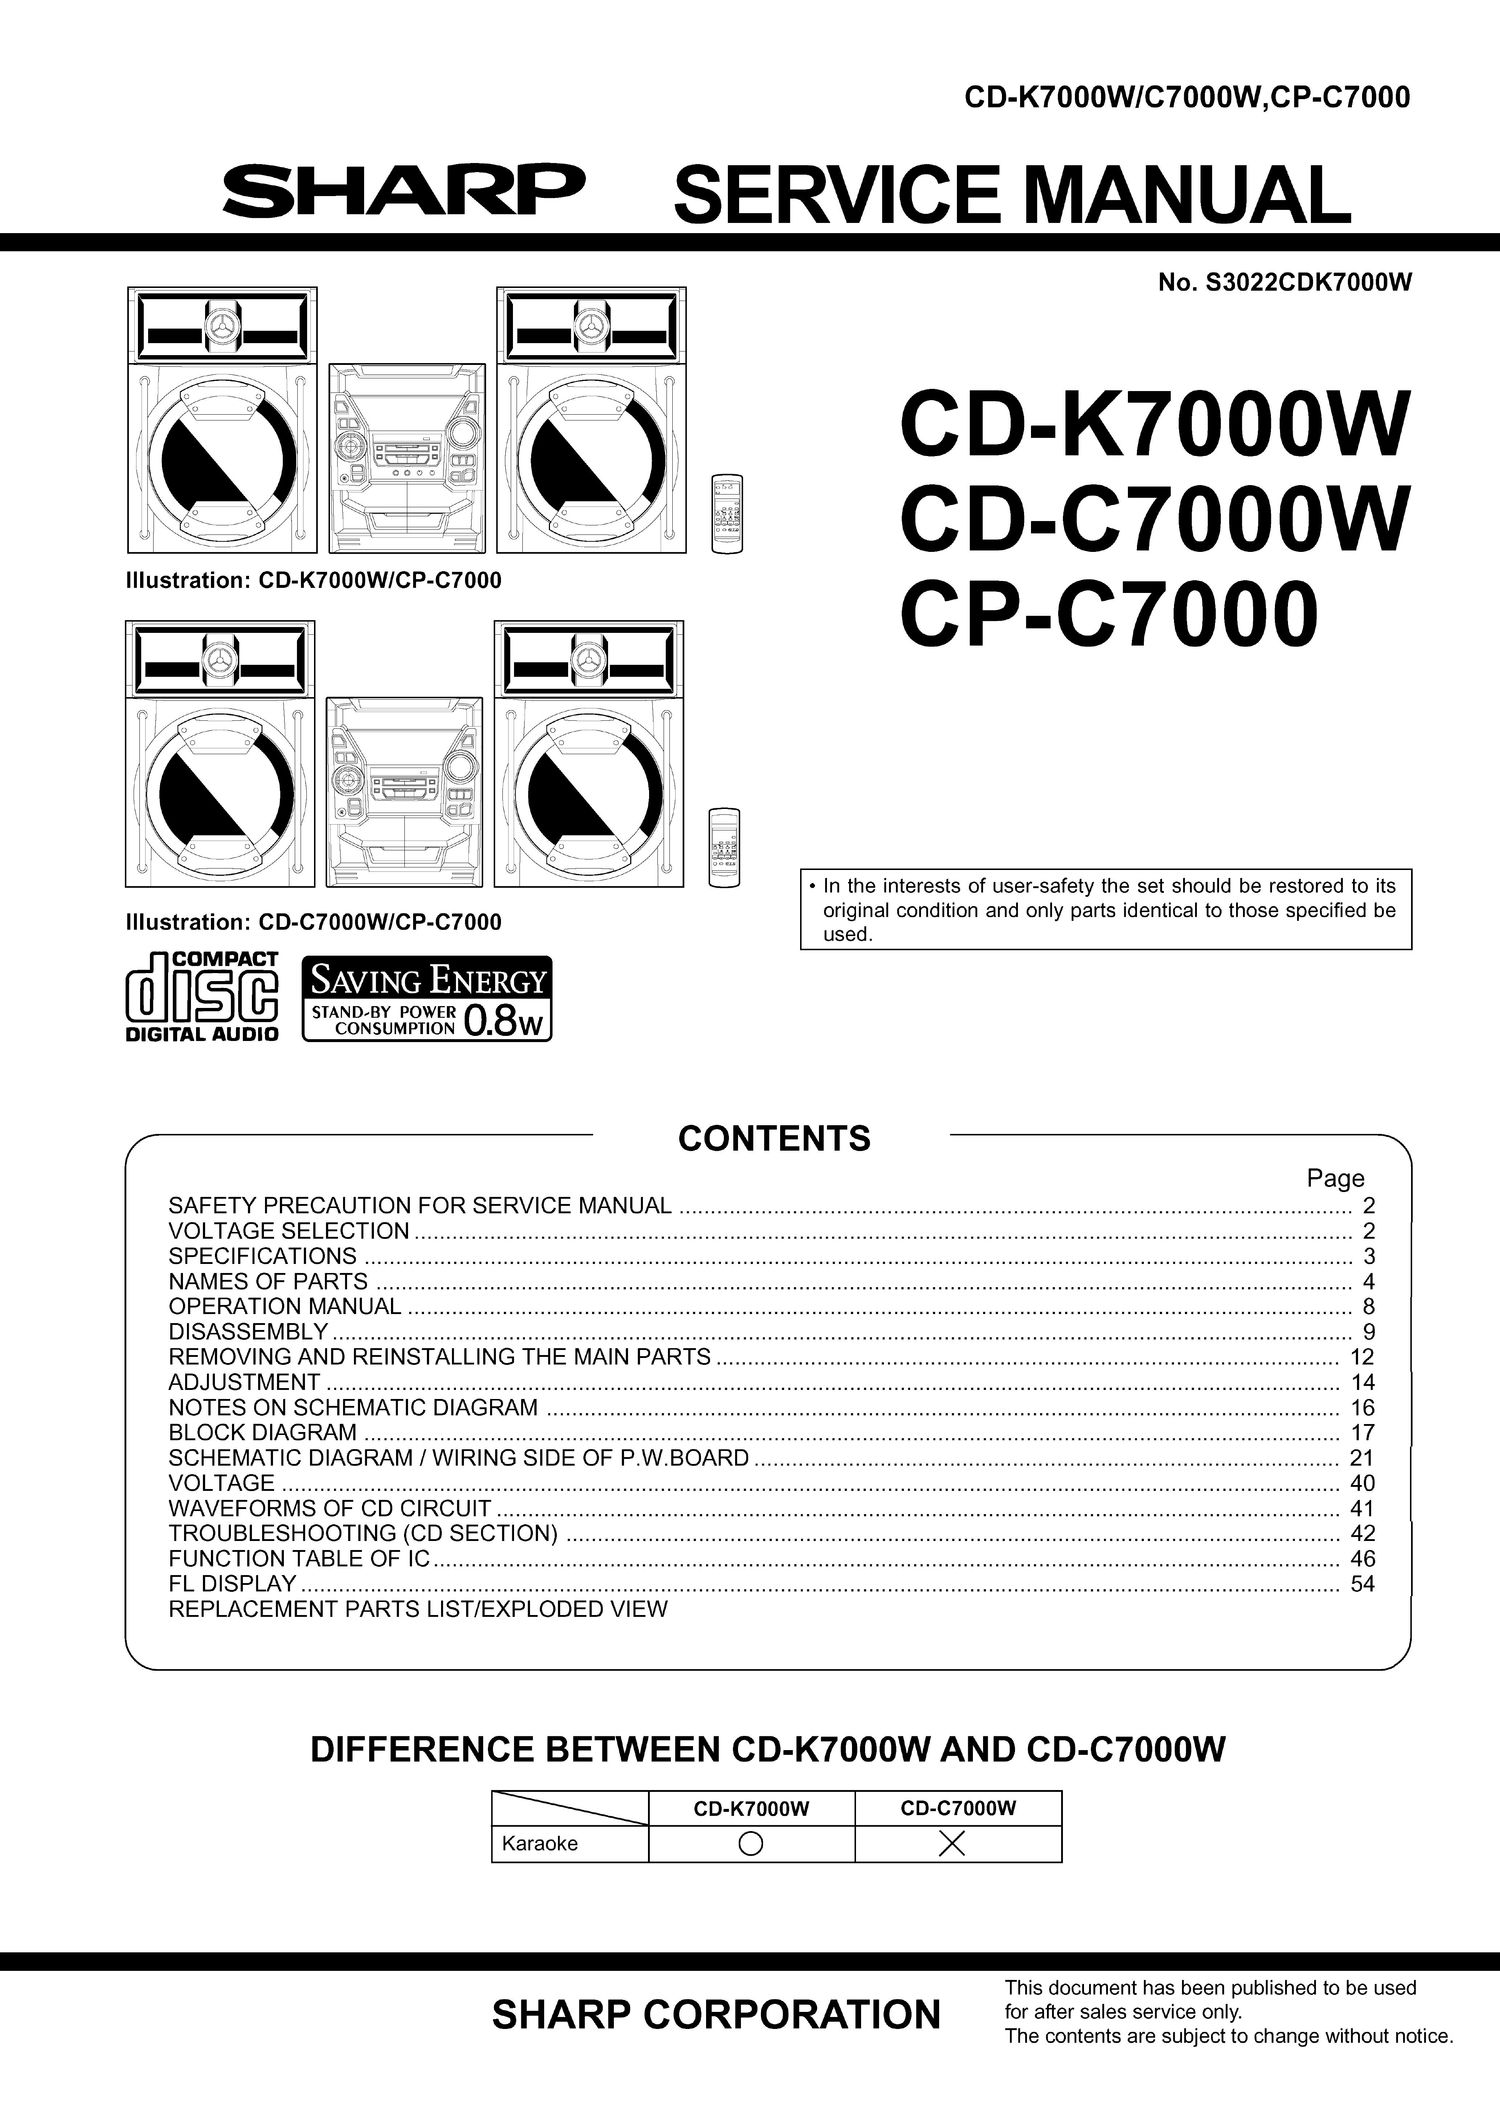 sharp cd k 7000 w service manual